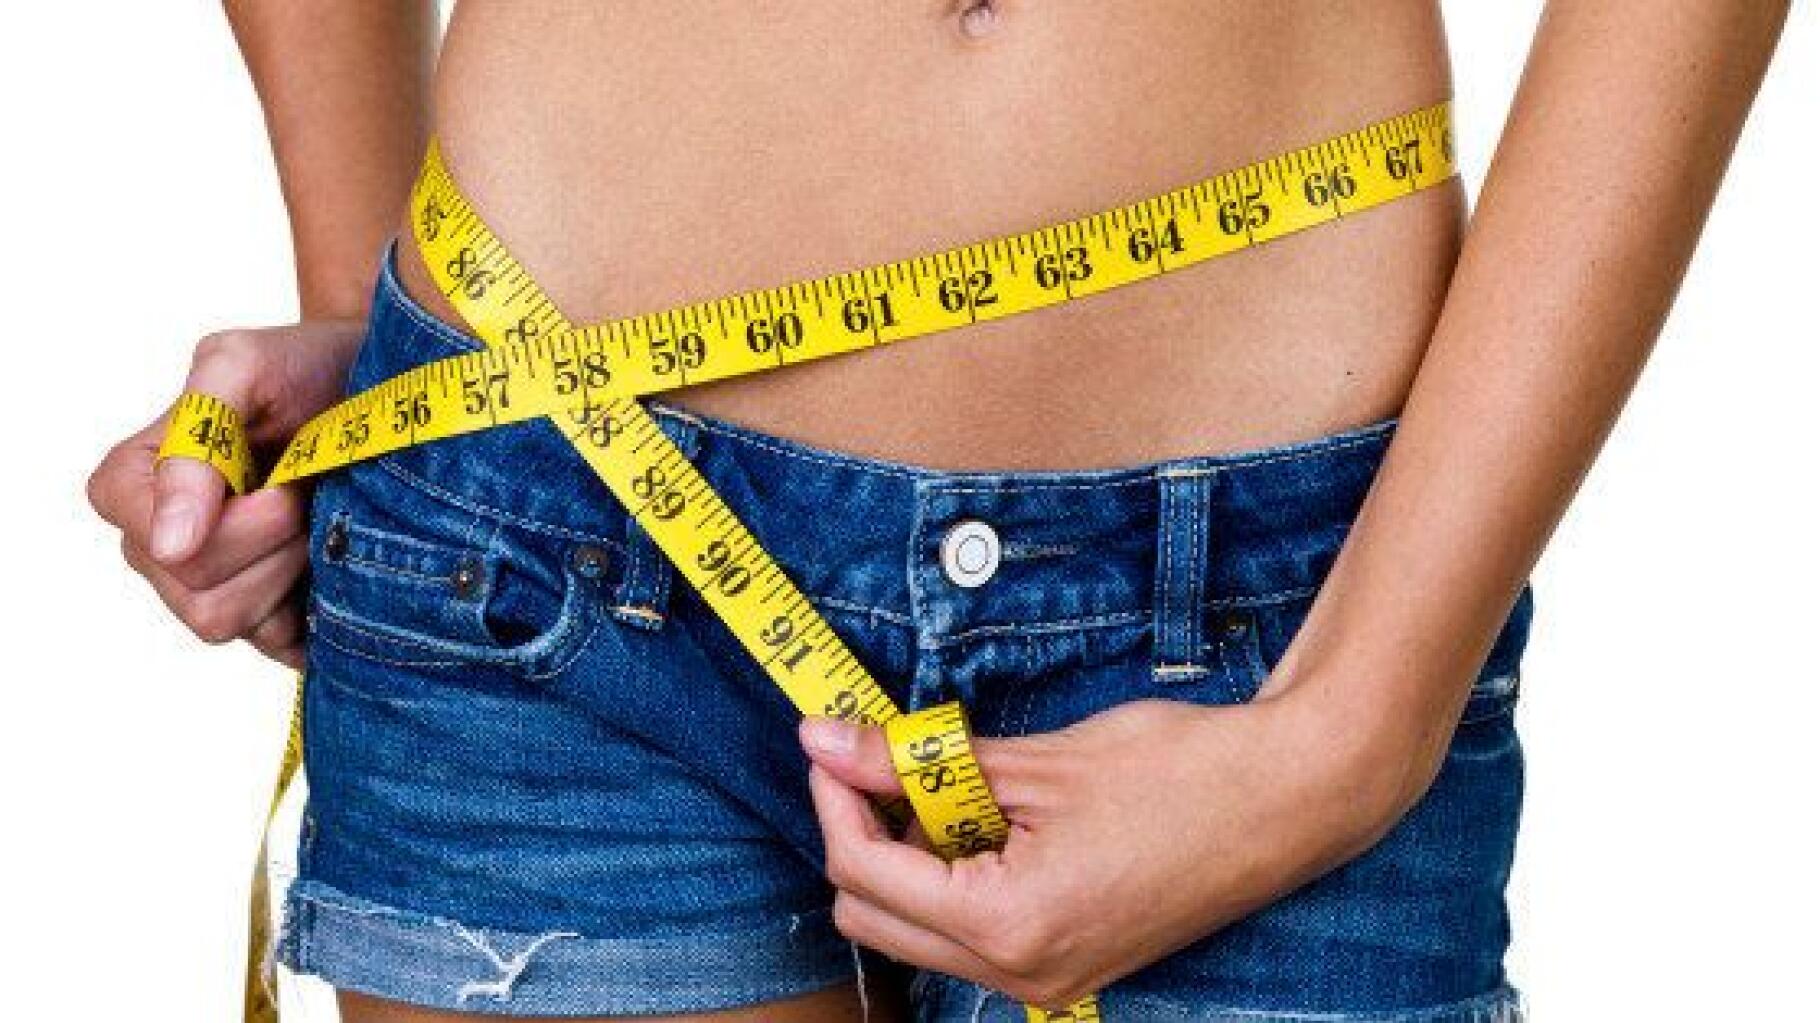 La largeur des hanches pourrait influencer le comportement sexuel des femmes